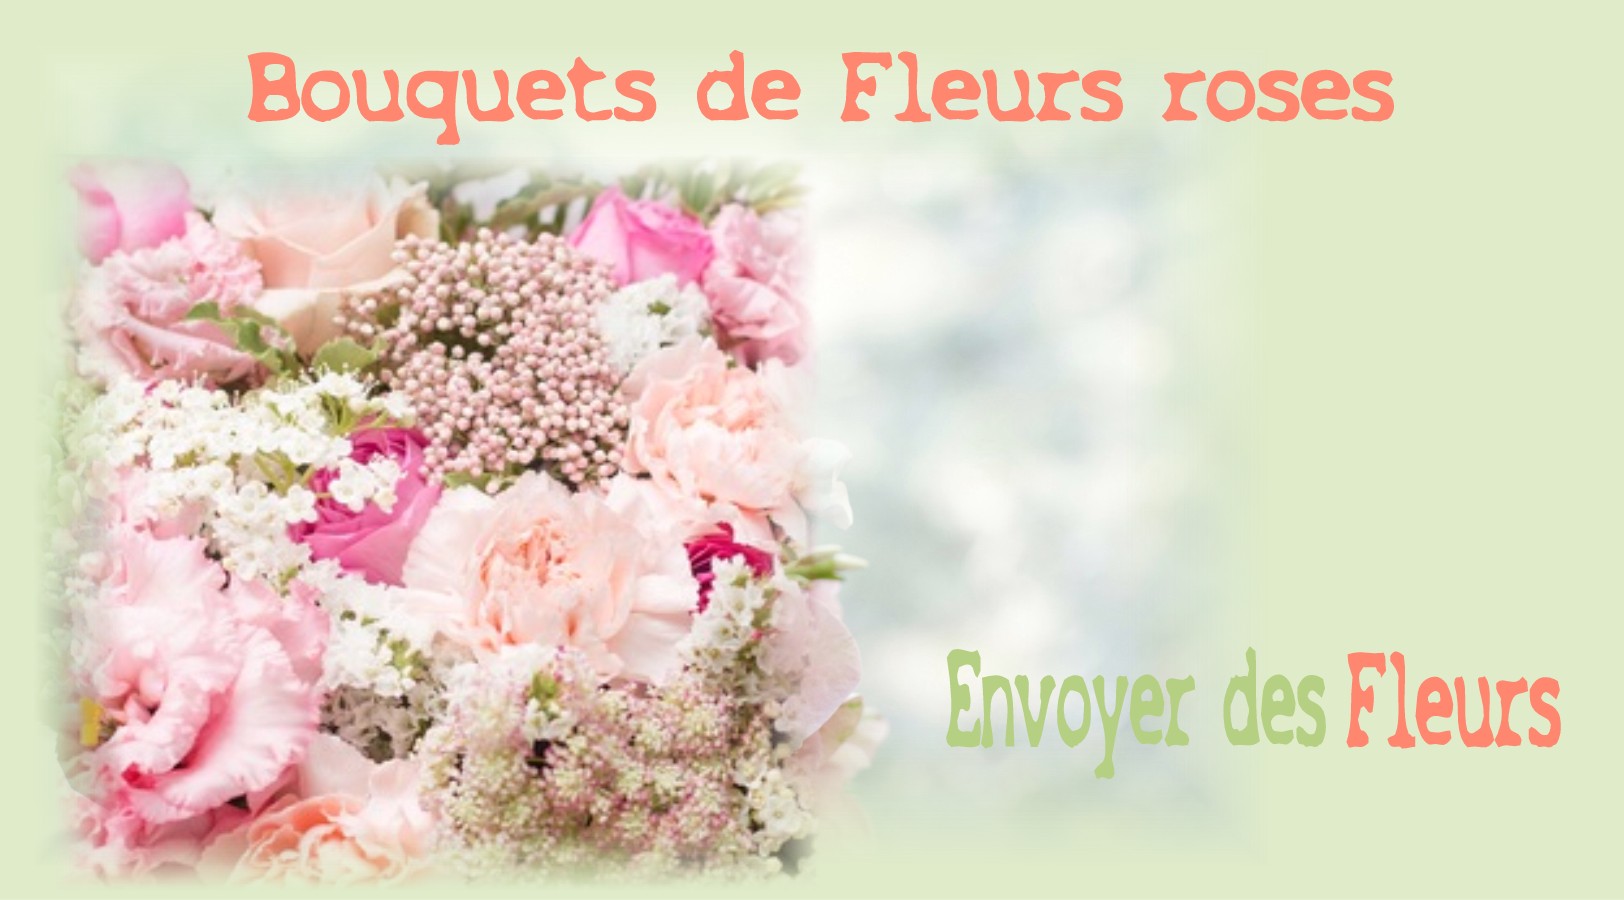 BOUQUETS DE FLEURS ROSES - FLEURISTE MONTPELLIER (34) - ENVOYER DES FLEURS